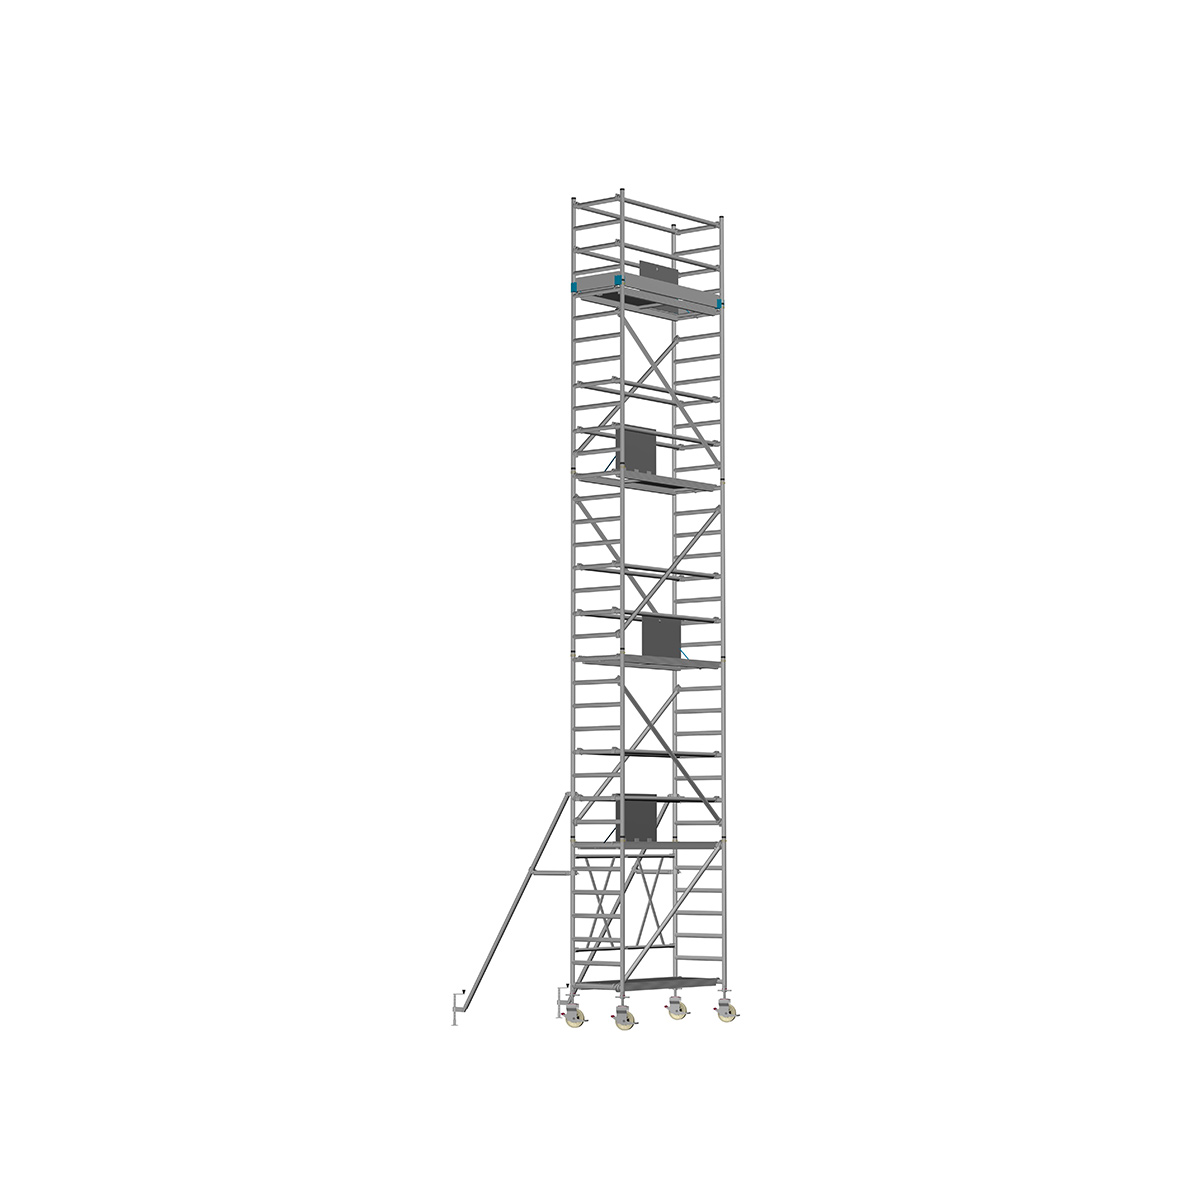 Chiemsee 2 SPEZIAL - Länge: 2,54 m - Breite: 0,74 m, Standhöhe 1,00 m